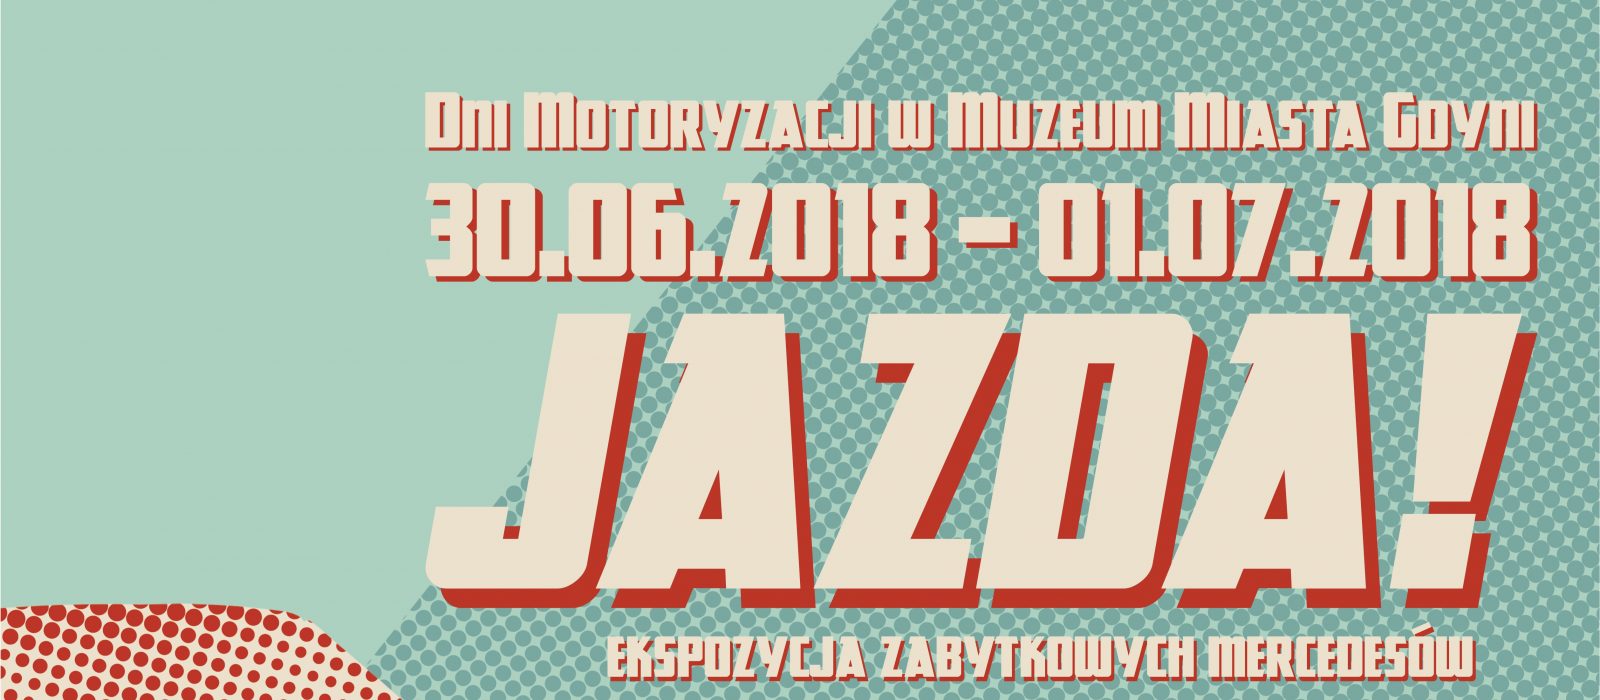 Dni Motoryzacji w Muzeum Miasta Gdyni